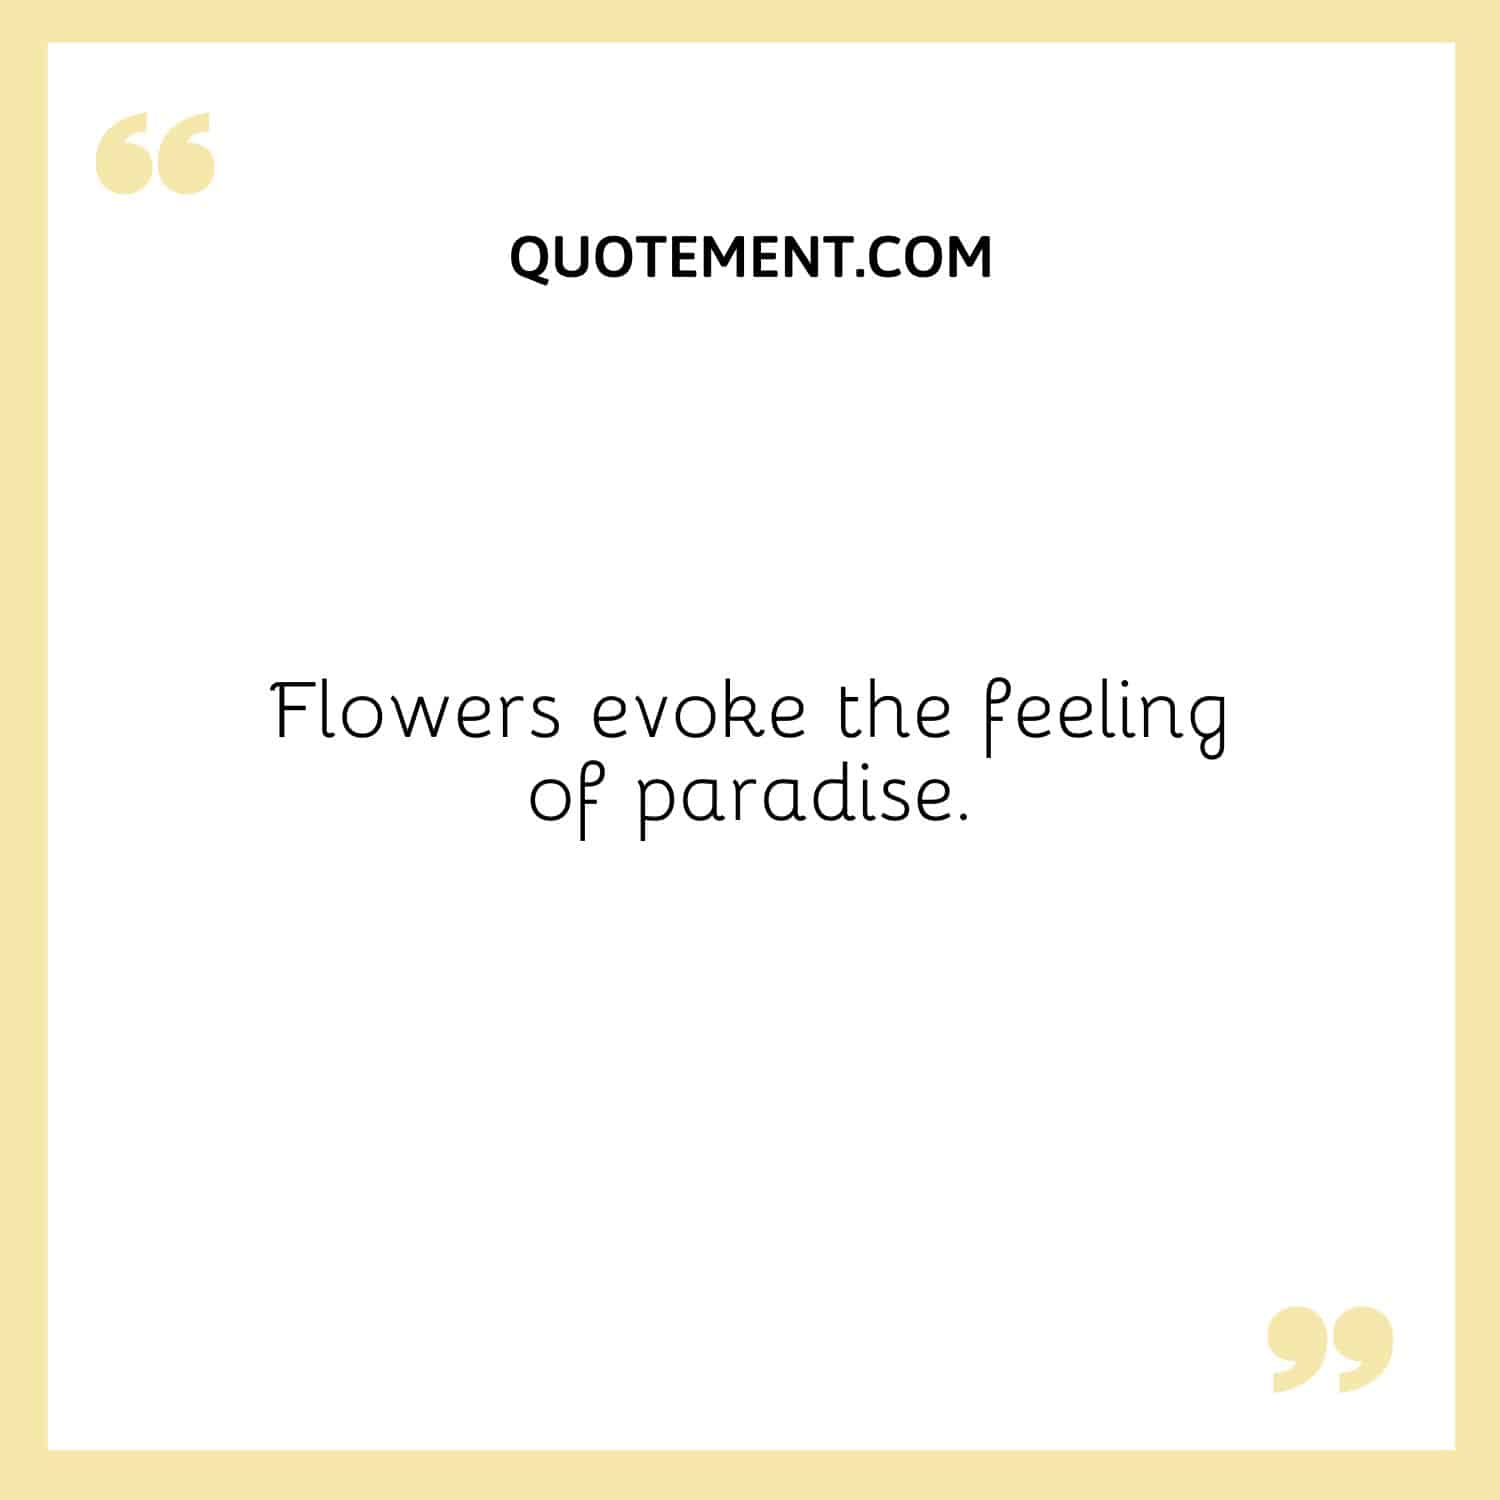 Flowers evoke the feeling of paradise